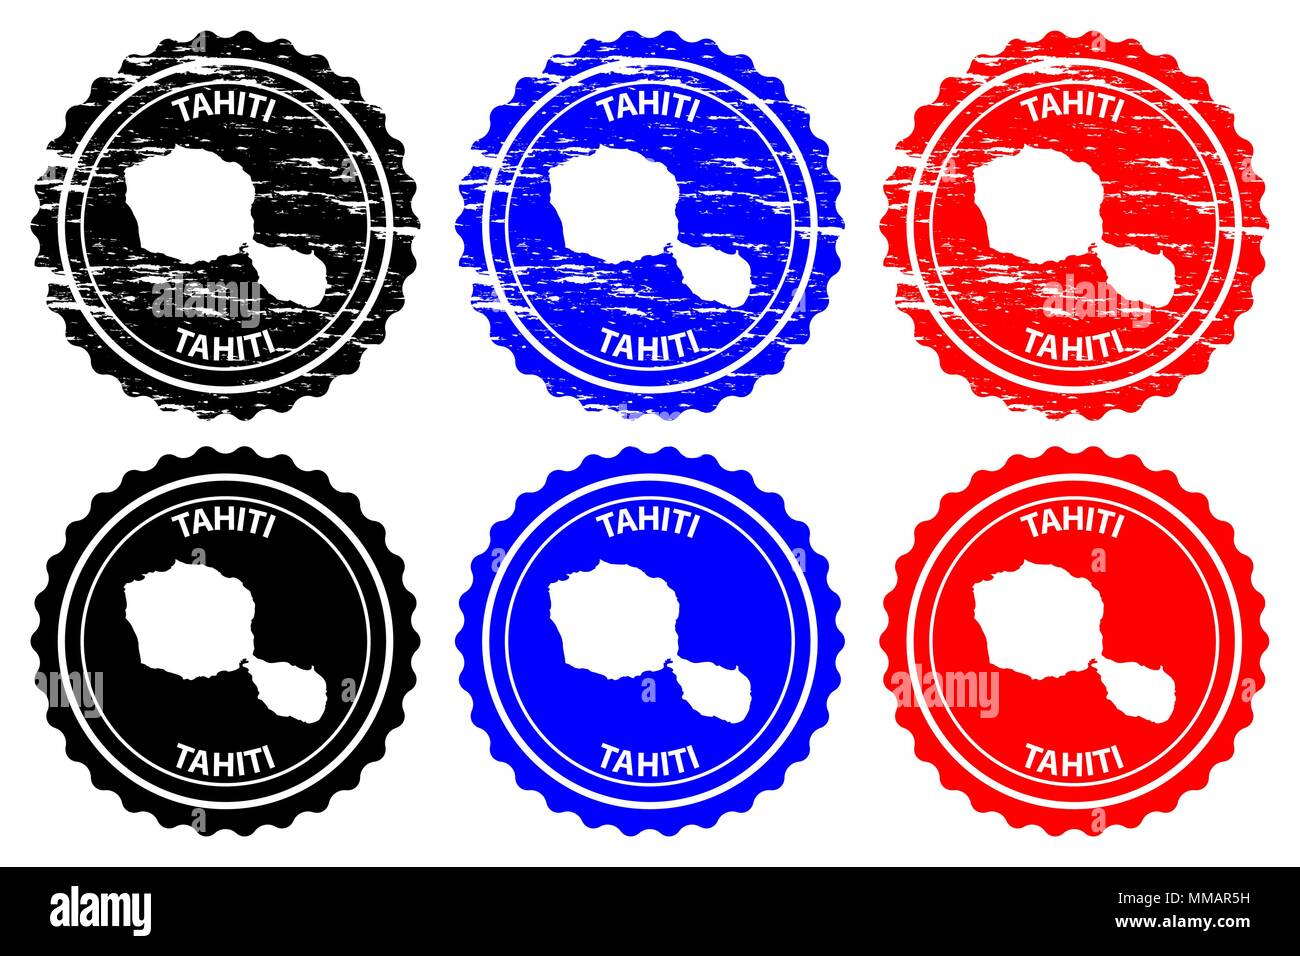 Tahiti - rubber stamp - vecteur, Tahiti carte - sticker - noir, bleu et rouge Illustration de Vecteur